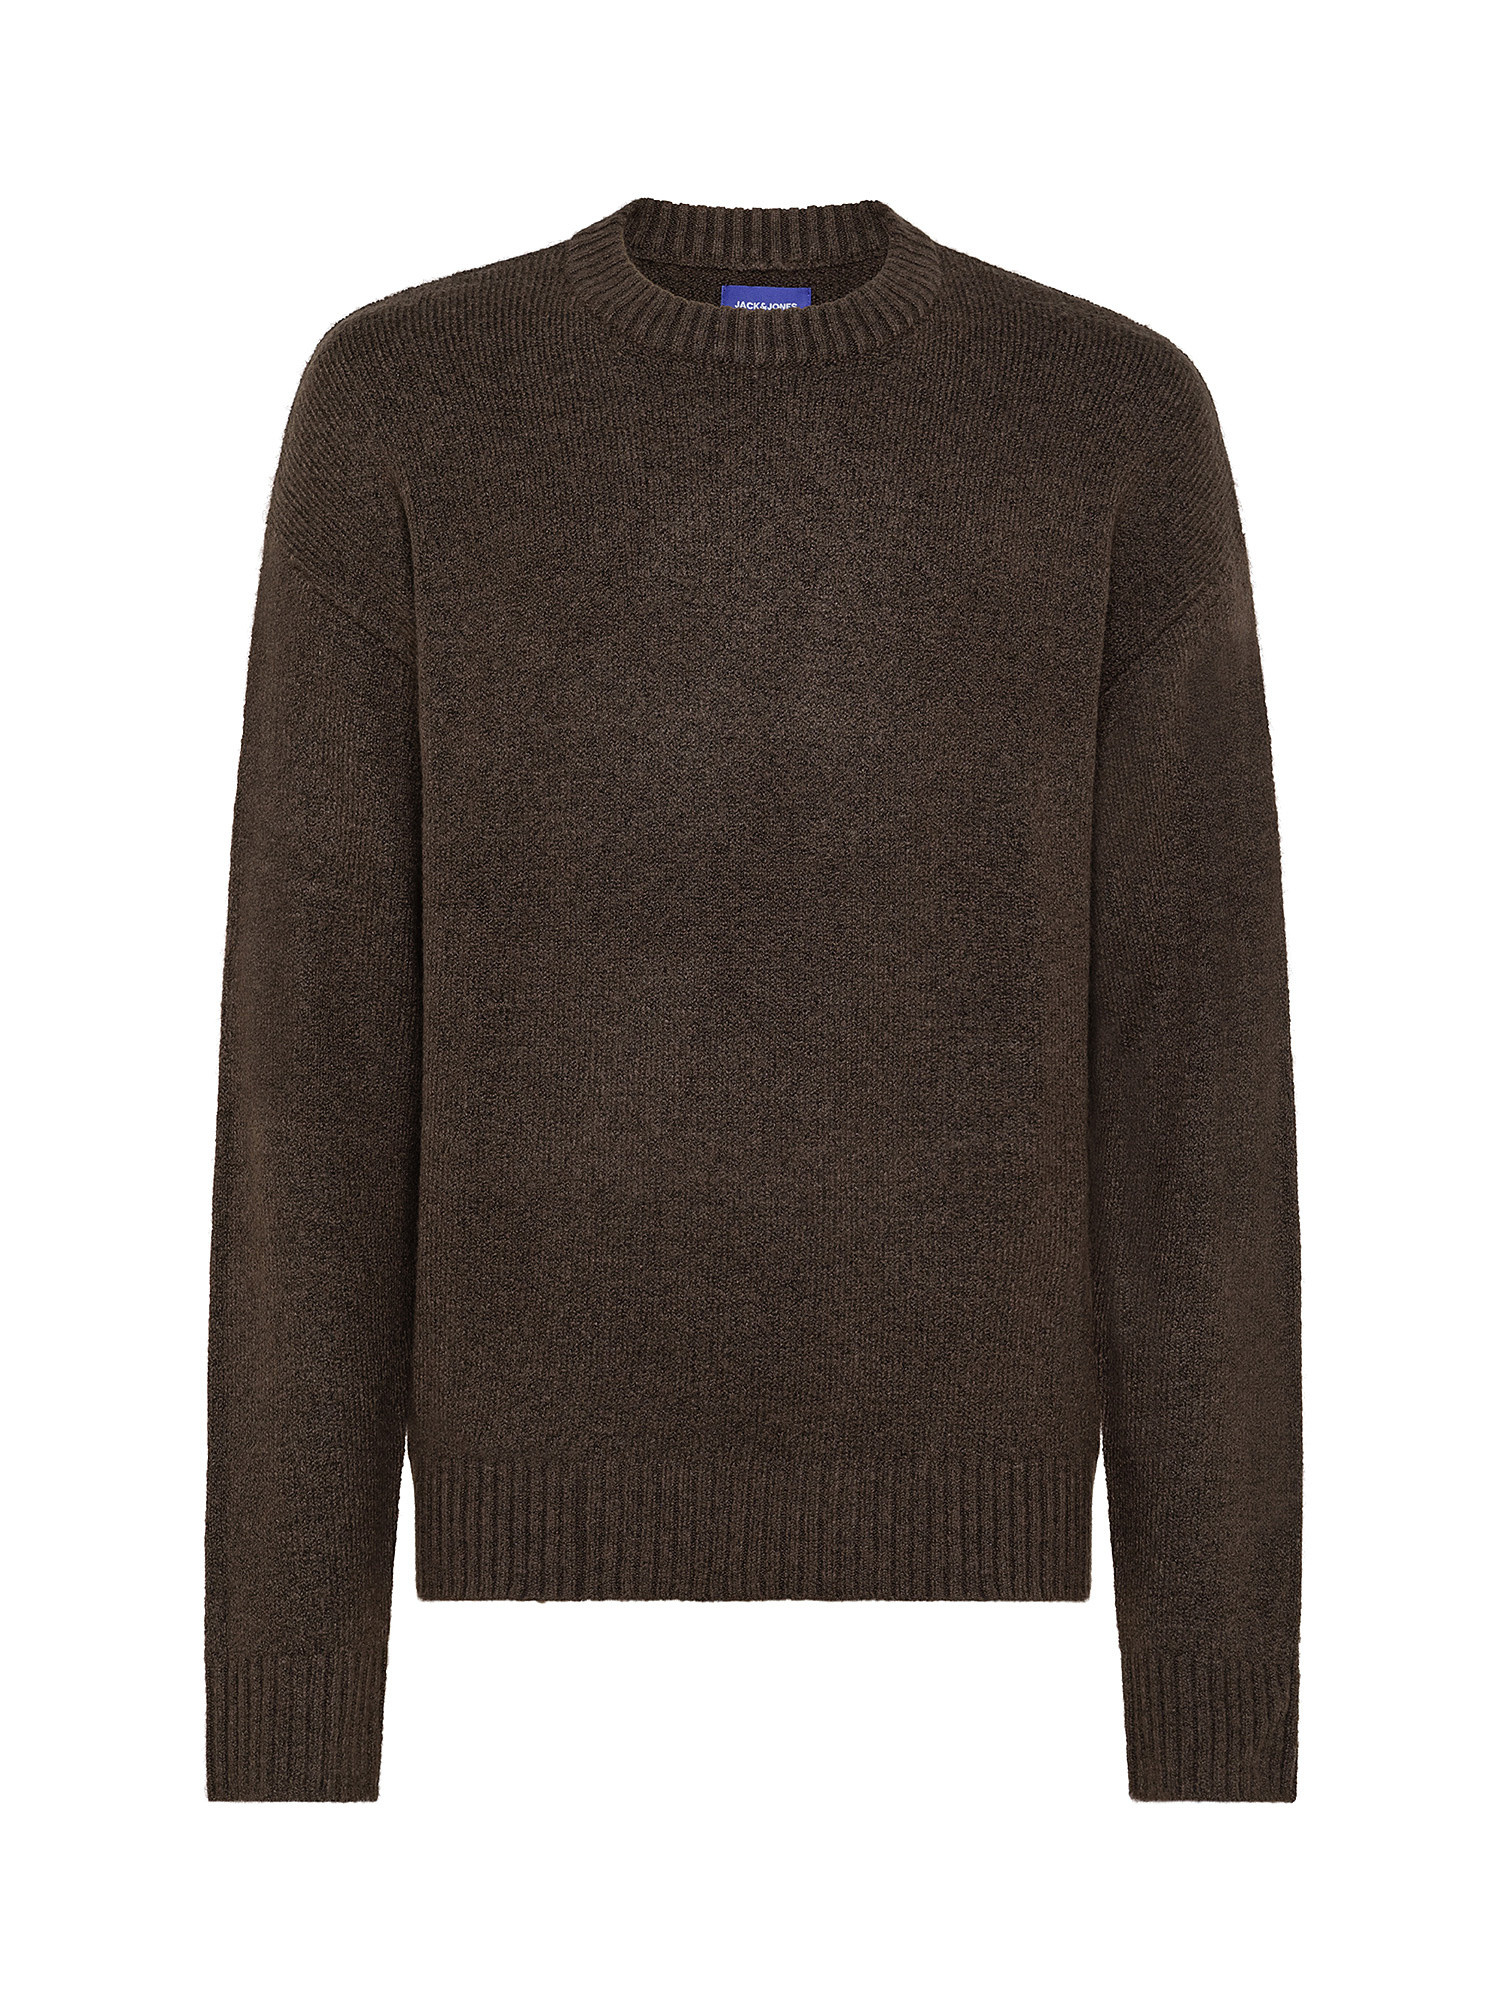 Пуловер с длинными рукавами Jack Jones, коричневый пуловер объемный с длинными рукавами cikoya xs s фиолетовый